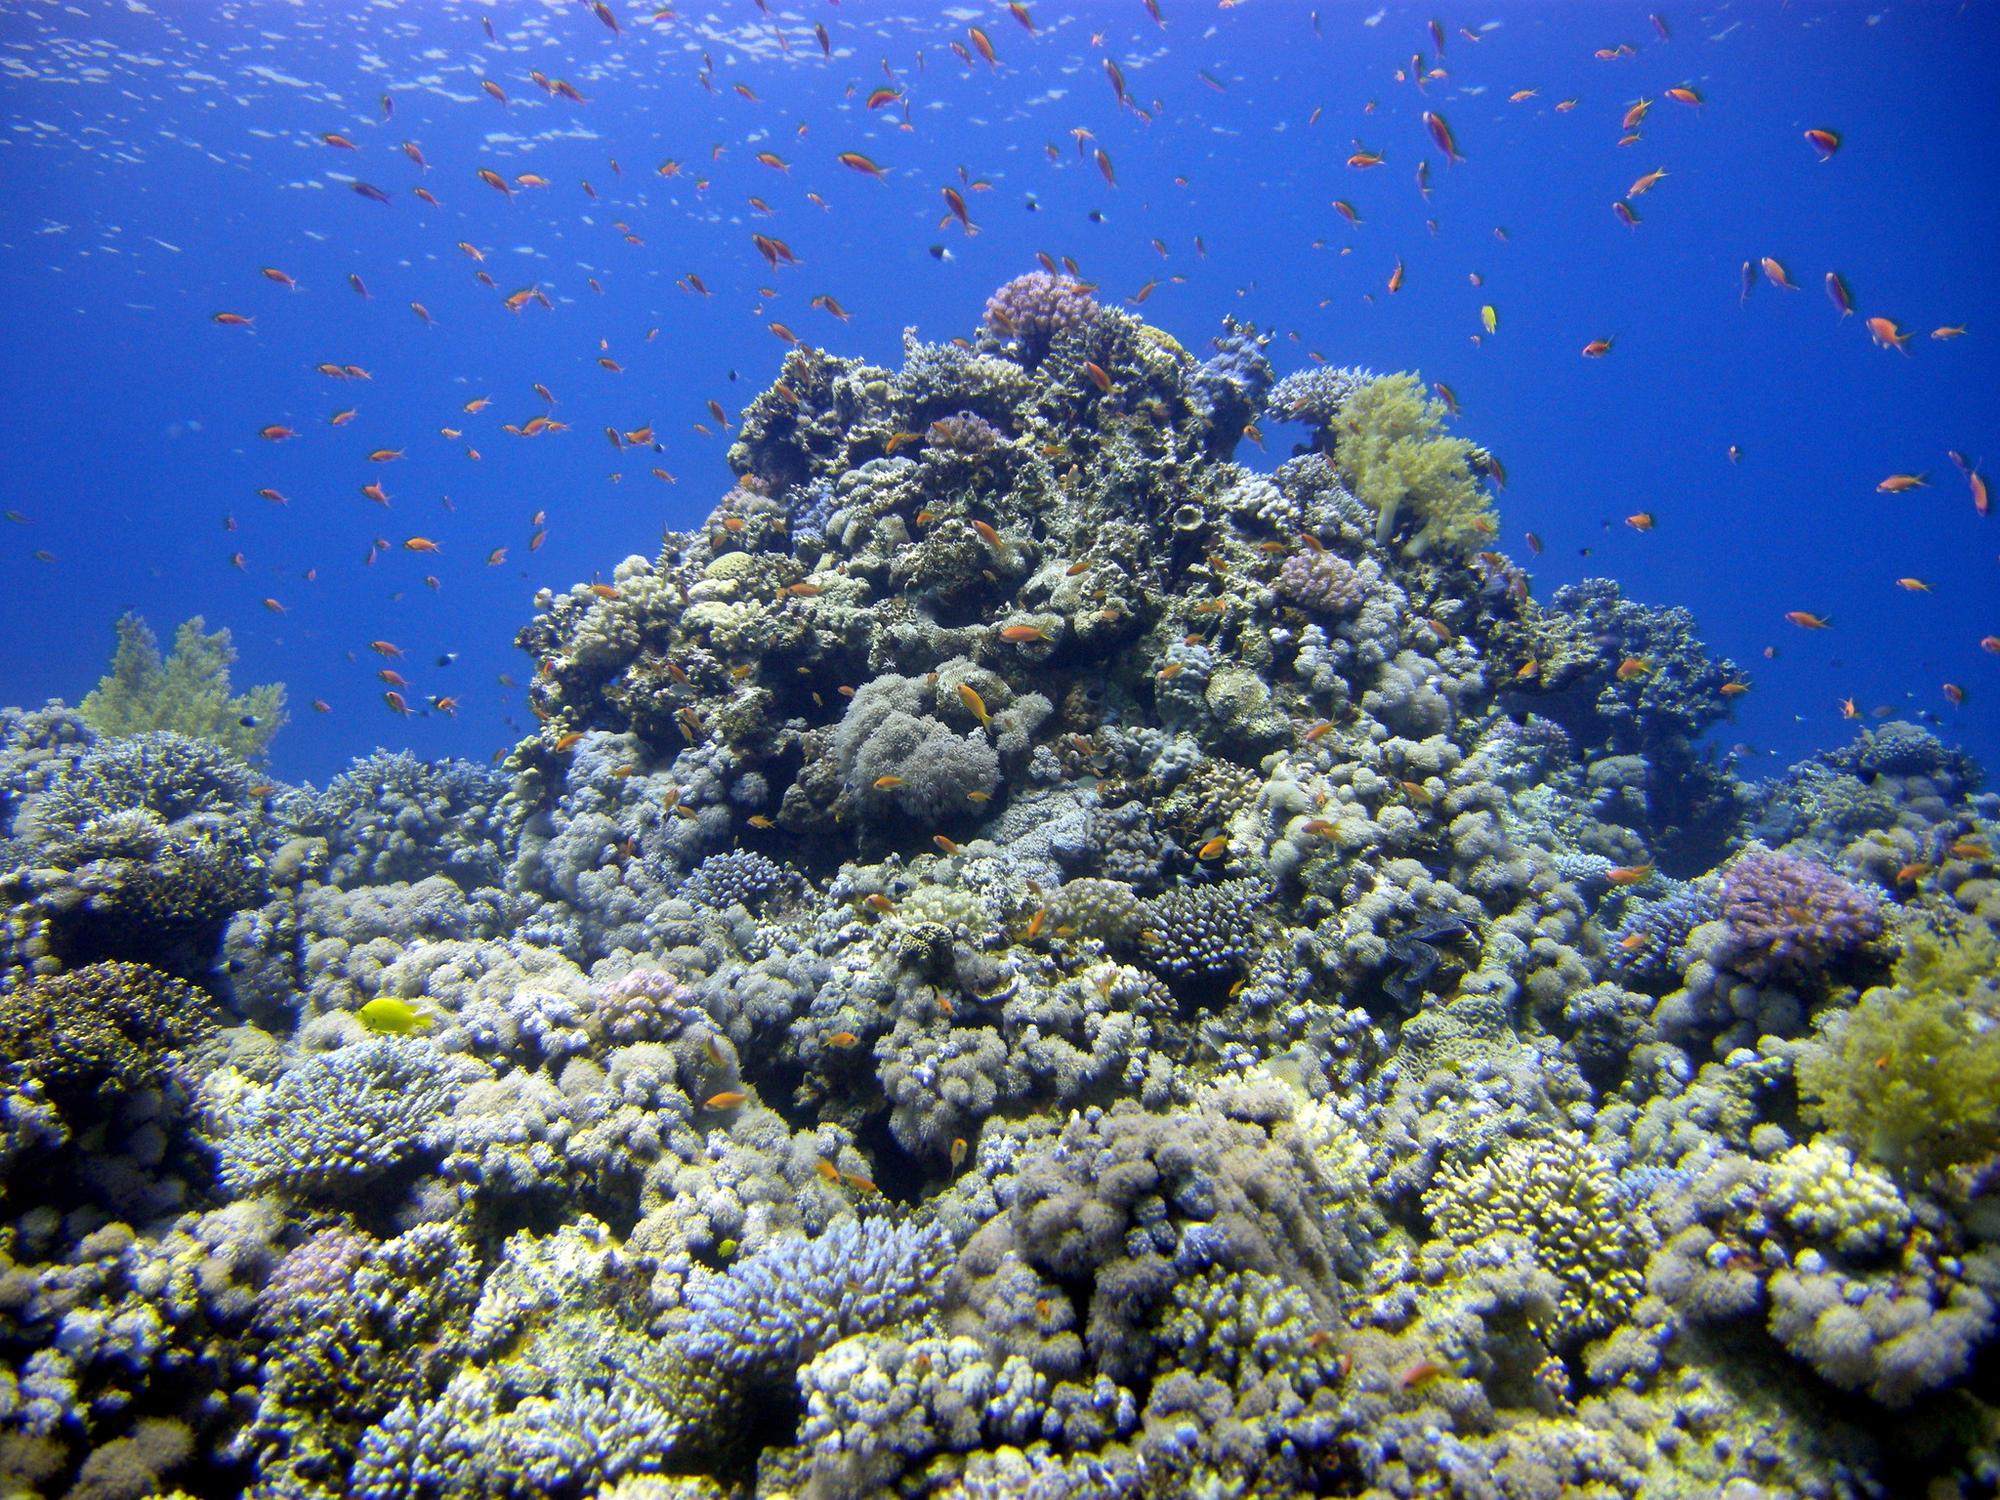 Korallen an aufragenden Felsen im Meer, umgeben von Fischen